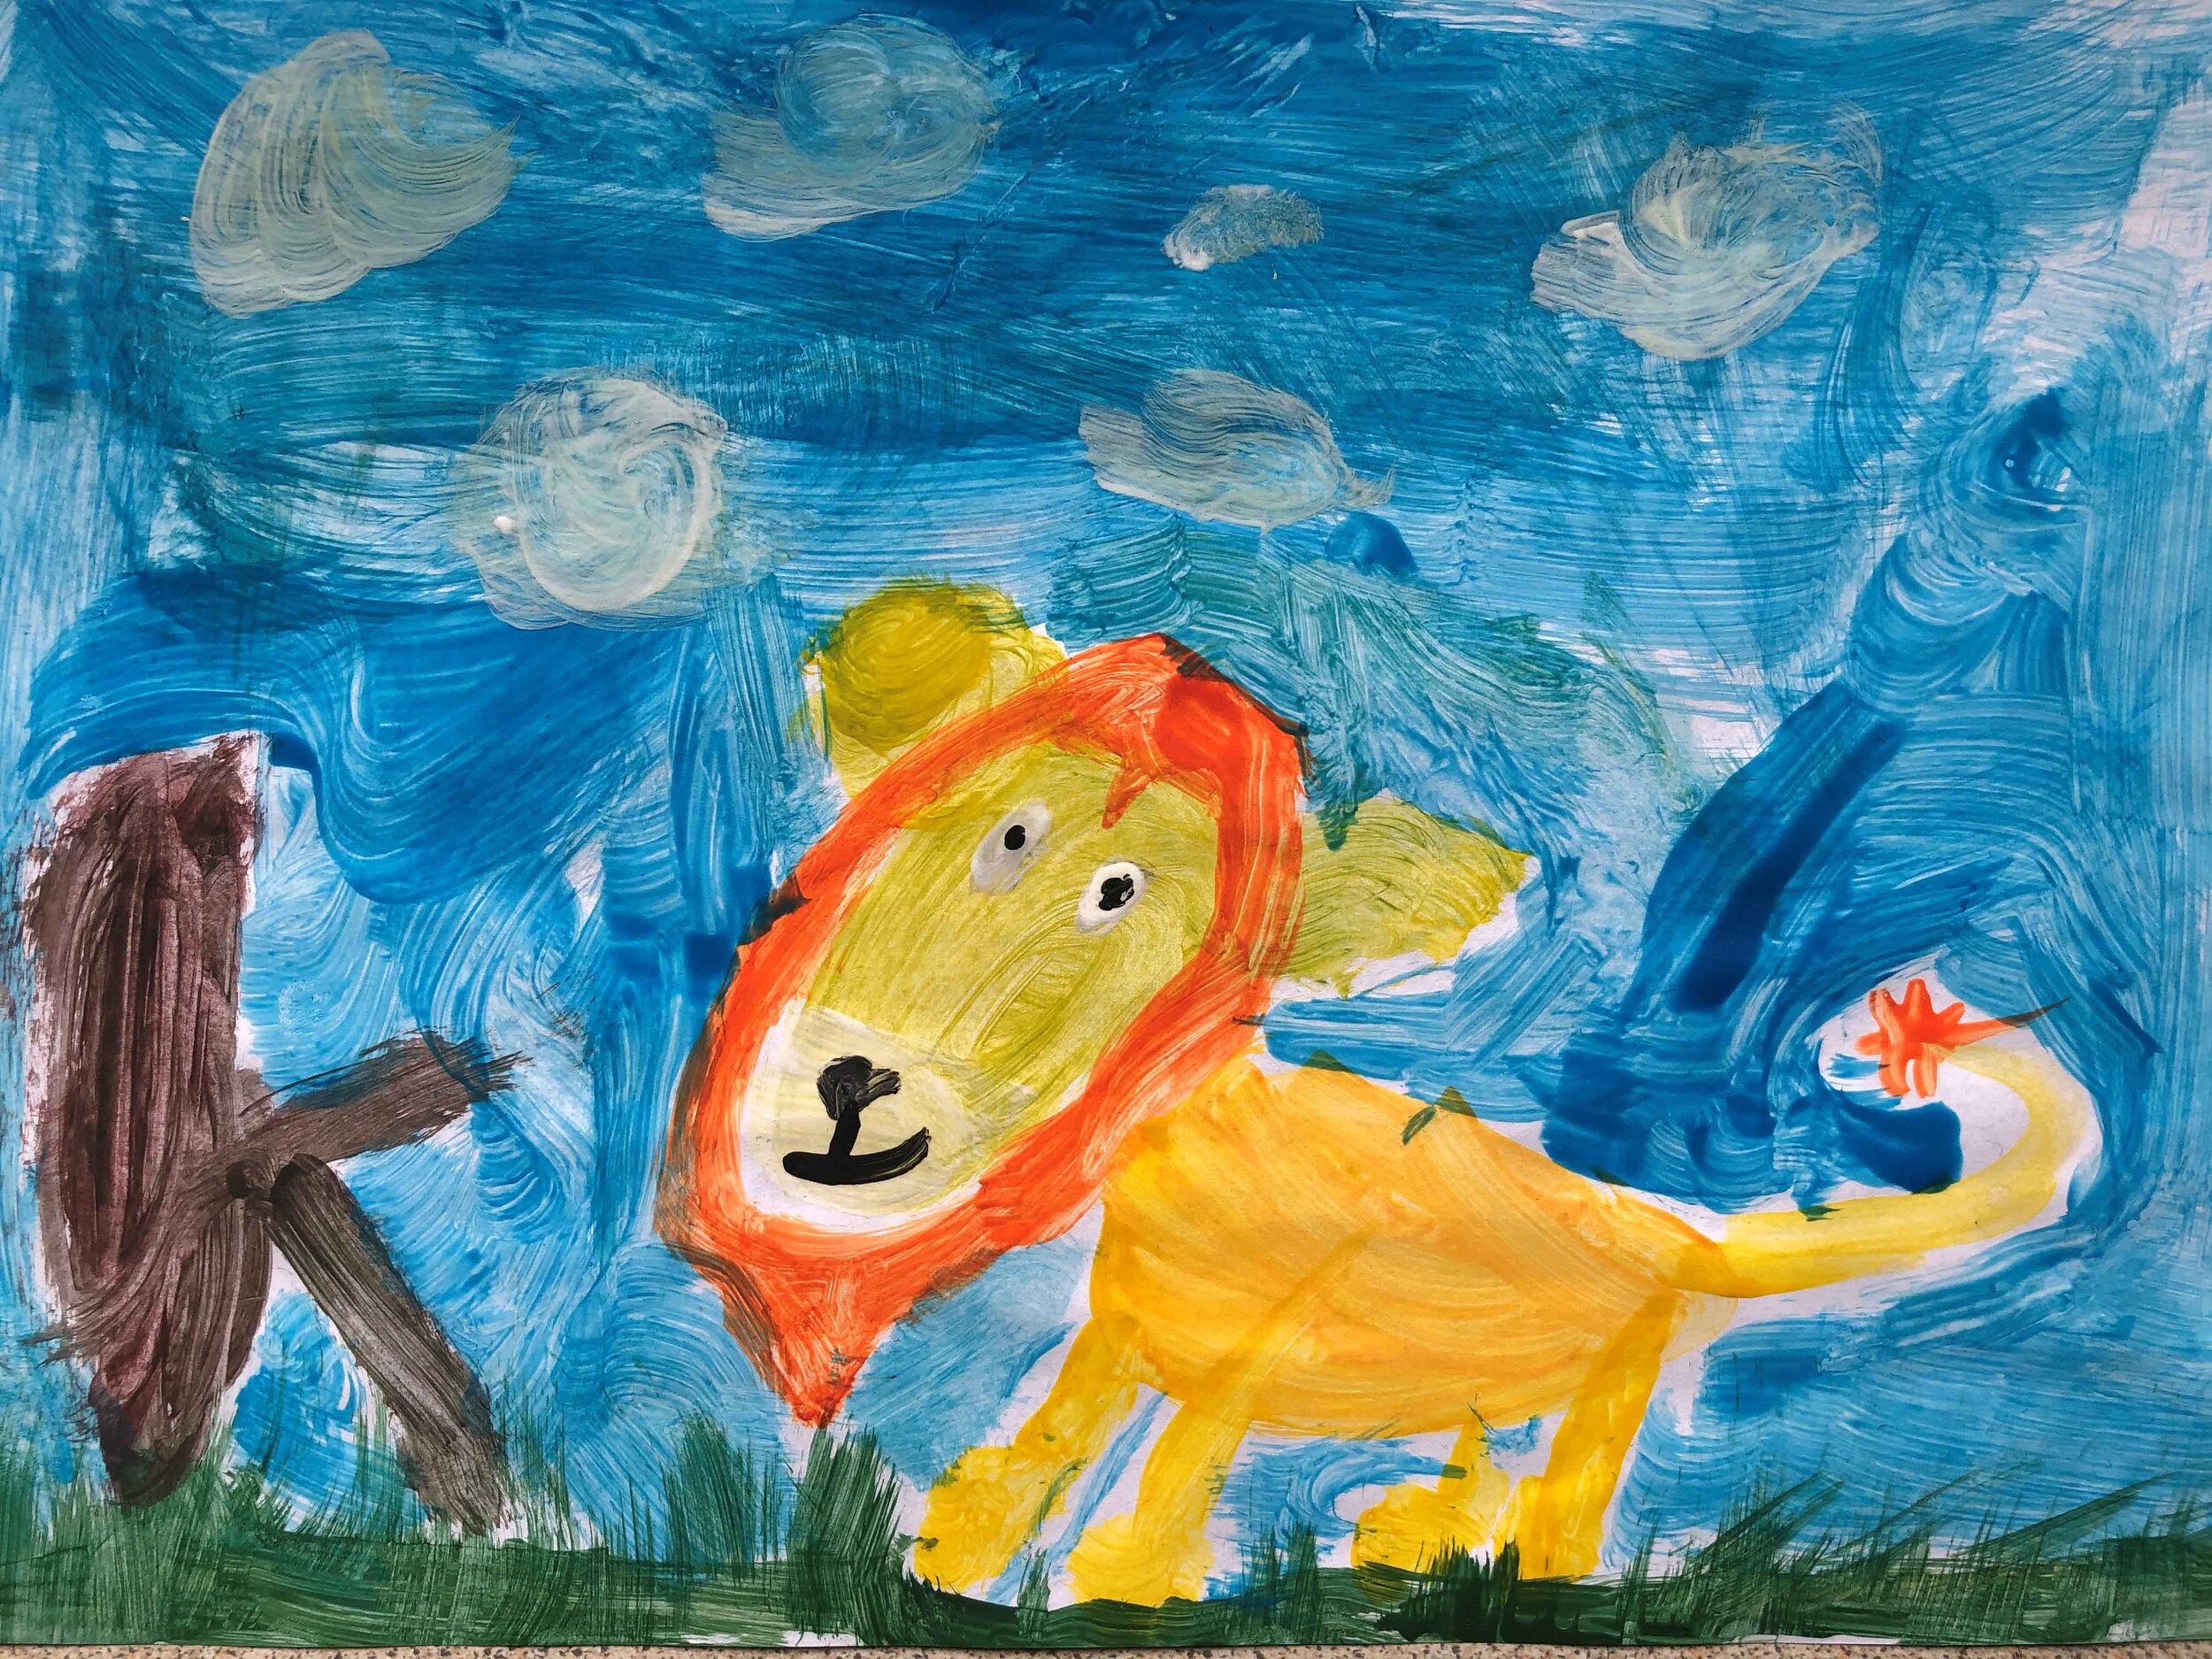 Lion King by Regina Kalman age 7